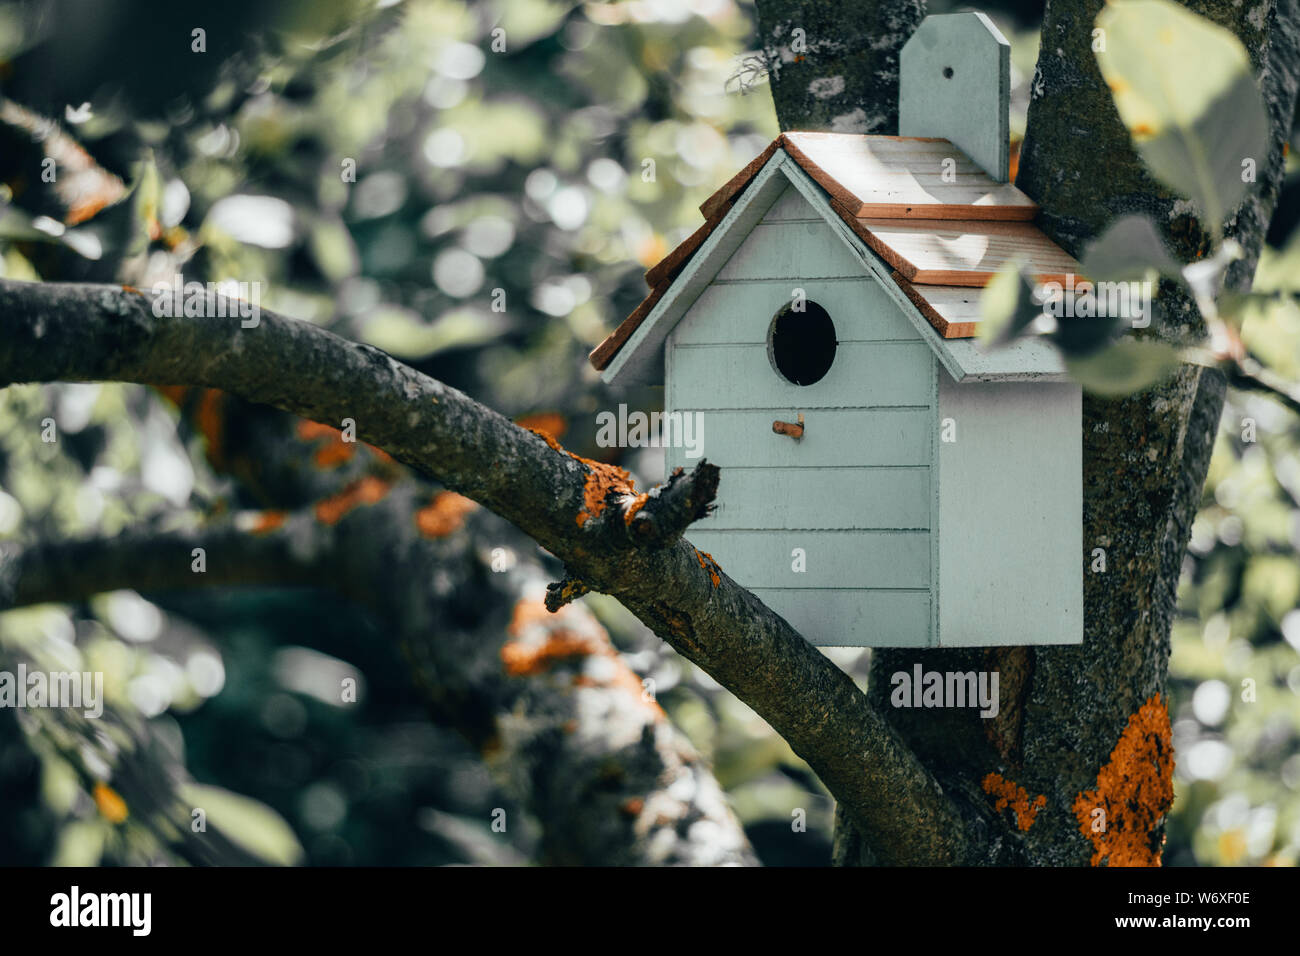 Holz- blau Vogelhaus auf einem Apple Tree in der Farm Park Zone. Einfache vogelhaus Design. Schutz für Vogel Zucht, nistkasten an einem Baum Stockfoto